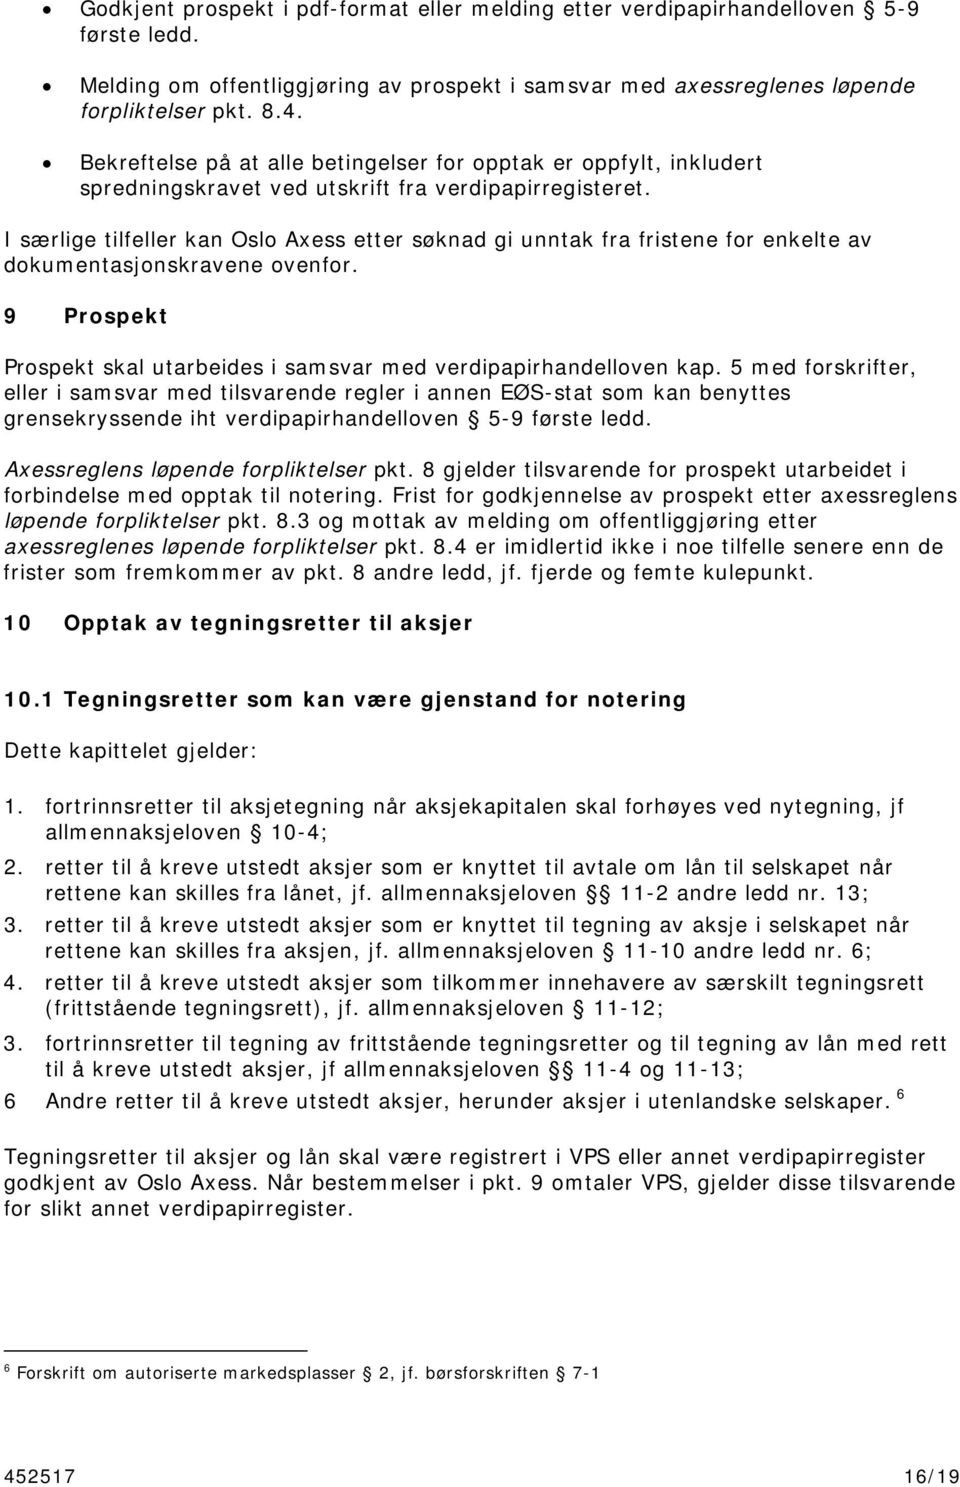 I særlige tilfeller kan Oslo Axess etter søknad gi unntak fra fristene for enkelte av dokumentasjonskravene ovenfor. 9 Prospekt Prospekt skal utarbeides i samsvar med verdipapirhandelloven kap.